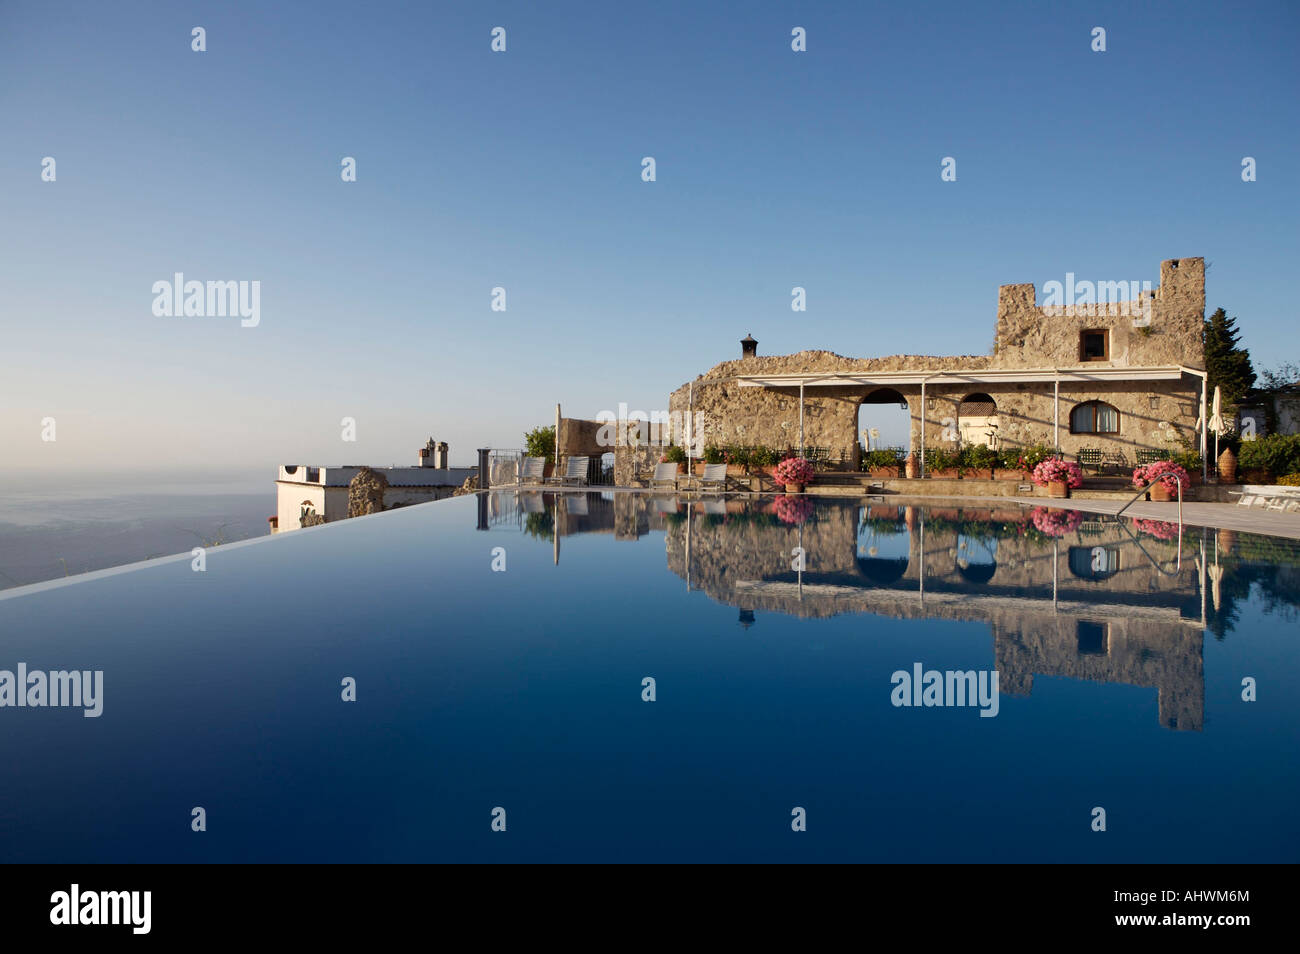 La piscine à débordement de l'hôtel Caruso de Ravello, Italie, prise dans le lever tôt le matin Banque D'Images